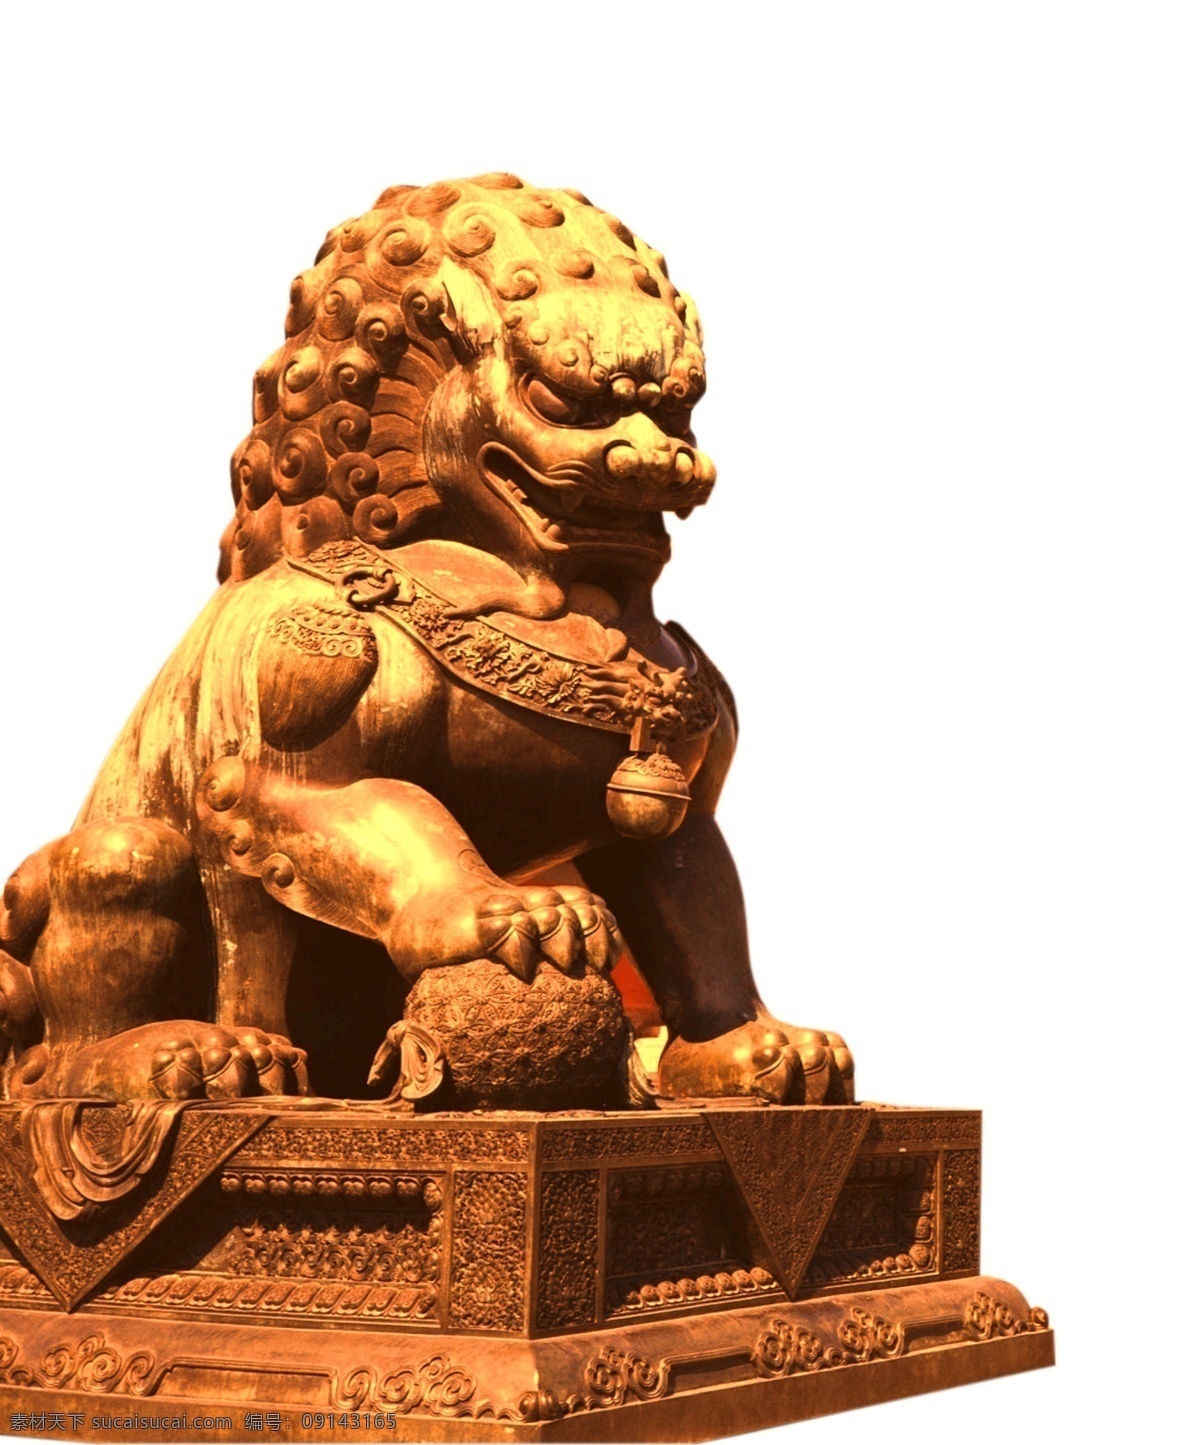 铜狮子 石头狮子 石狮 狮子雕塑 狮子素材 铜狮子雕塑 大门狮子 大门口石狮 大理石狮子